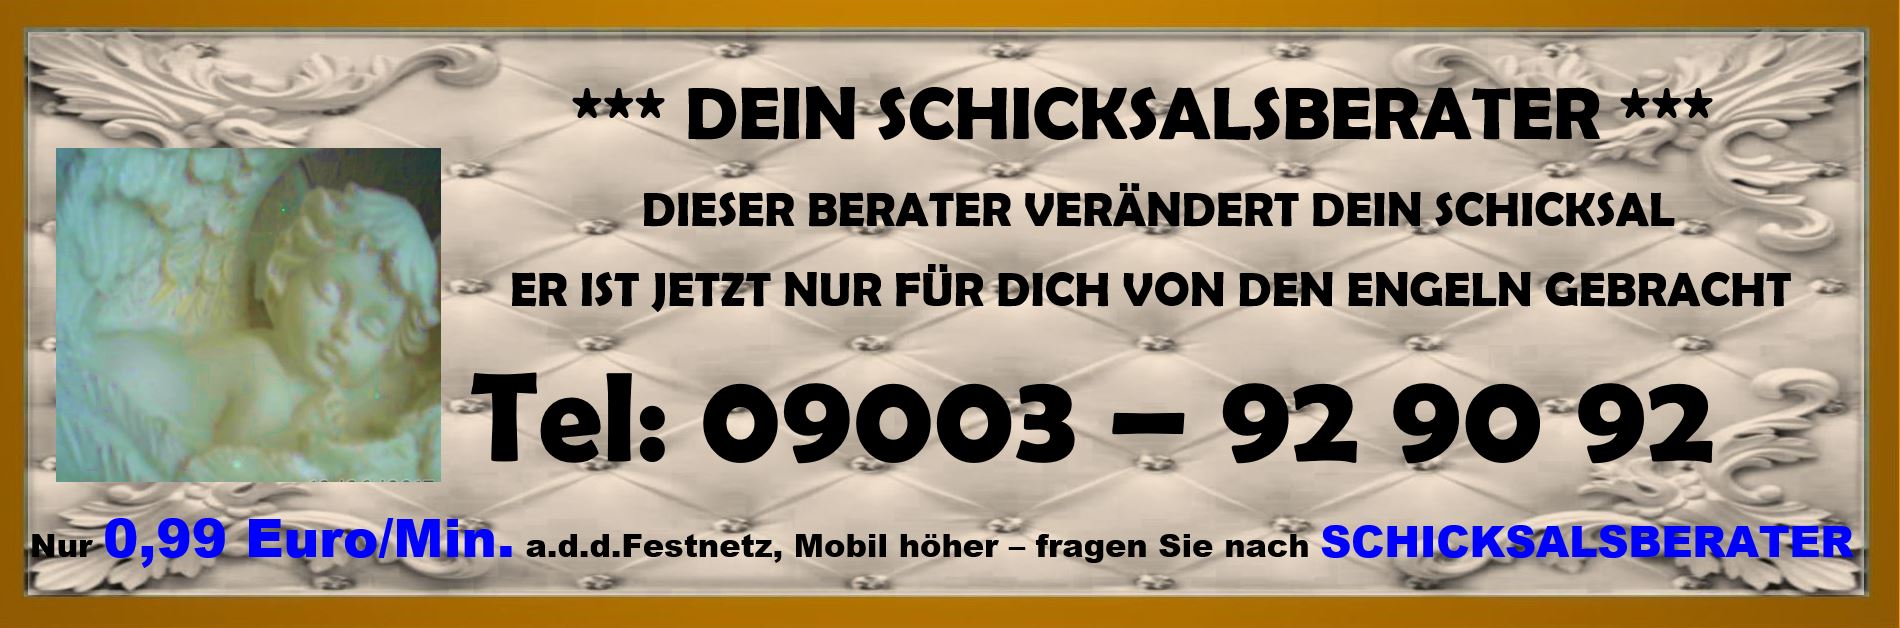 Kartenlegen am Telefon zum Top Sonderangebot 15 Min für 5,00 EUR 